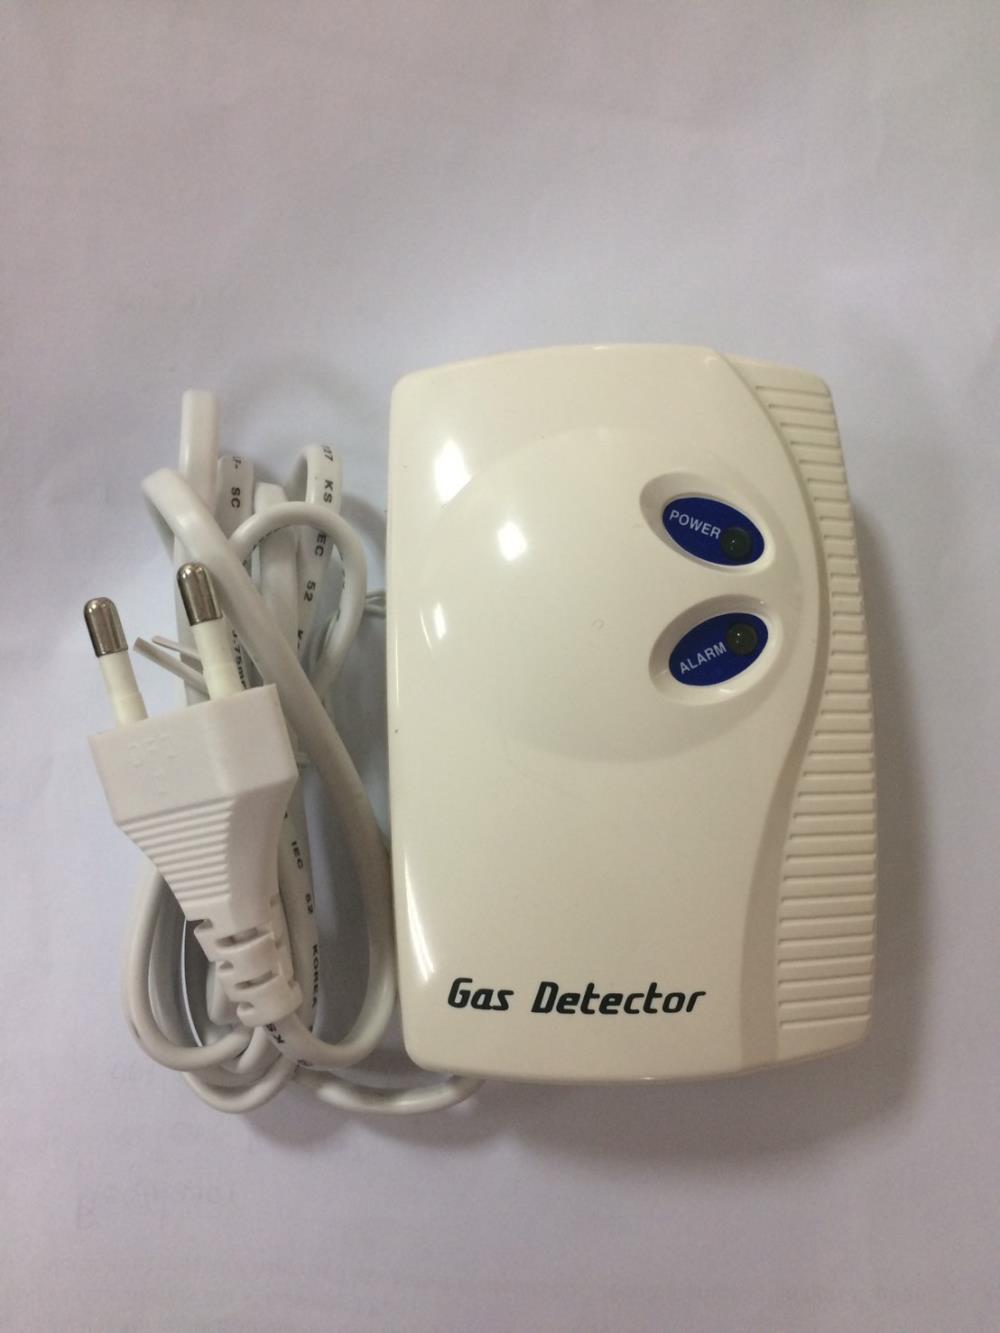 Gas Leak Detector (Household) Model: AB-370#Gas Leak Detector (Household) Model: AB-370,Gas Leak Detector (Household) Model: AB-370#Gas Leak Detector (Household) Model: AB-370,Gas Leak Detector (Household) Model: AB-370#Gas Leak Detector (Household) Model: AB-370,Instruments and Controls/Detectors